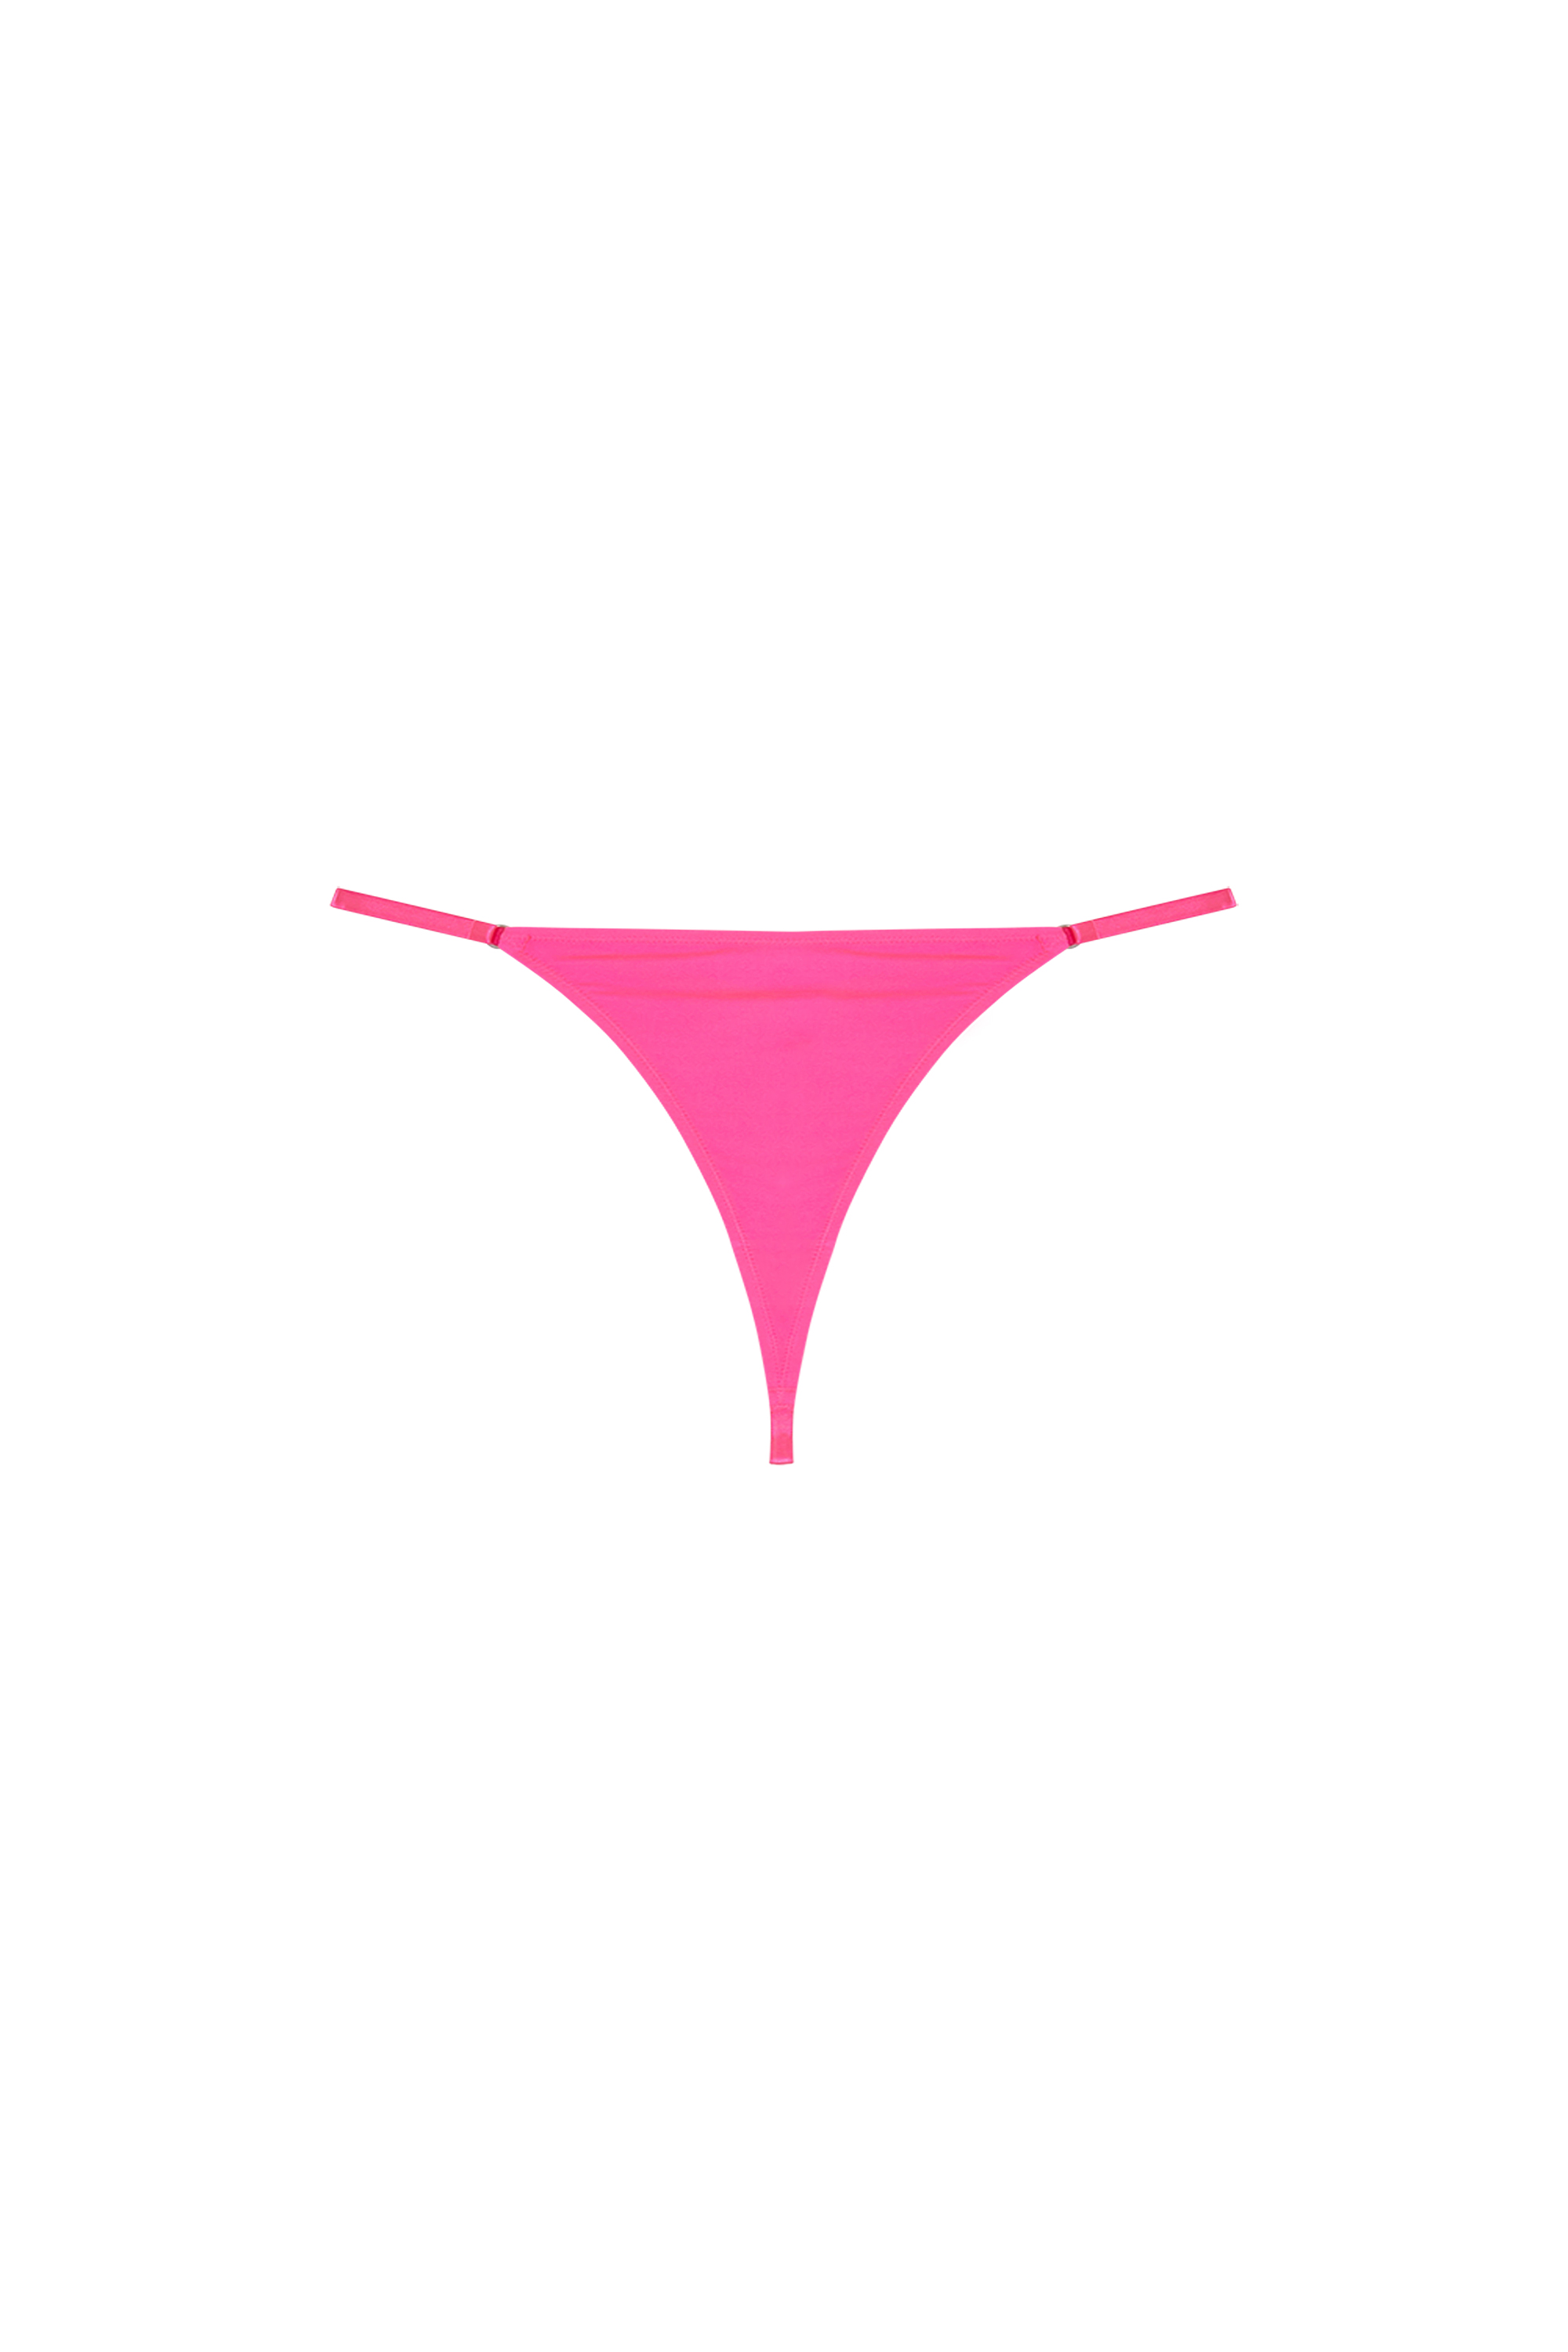 Women's Underwear: Bodies, Briefs, Bras, Tops, Thongs | Diesel 